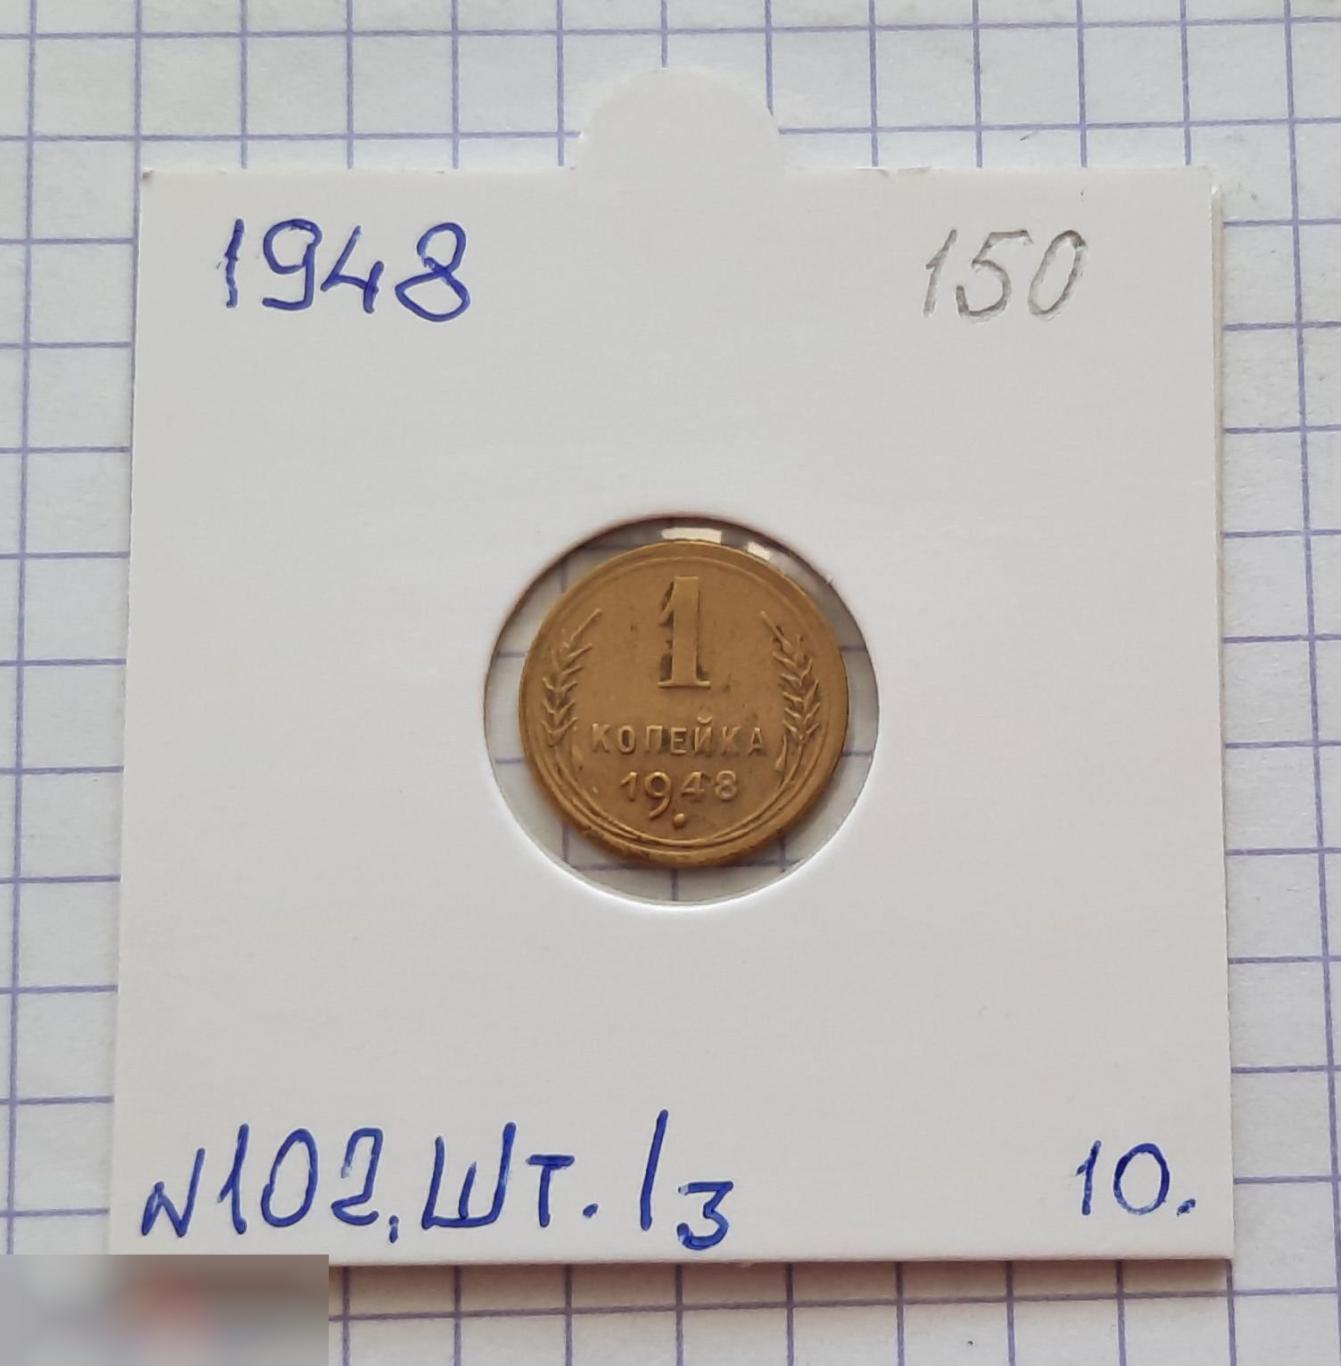 Монета, 1 Копейка, 1948 год, ШТ 1.3, № 102, СОСТОЯНИЕ, СОХРАН, Клуб, Лот № 10